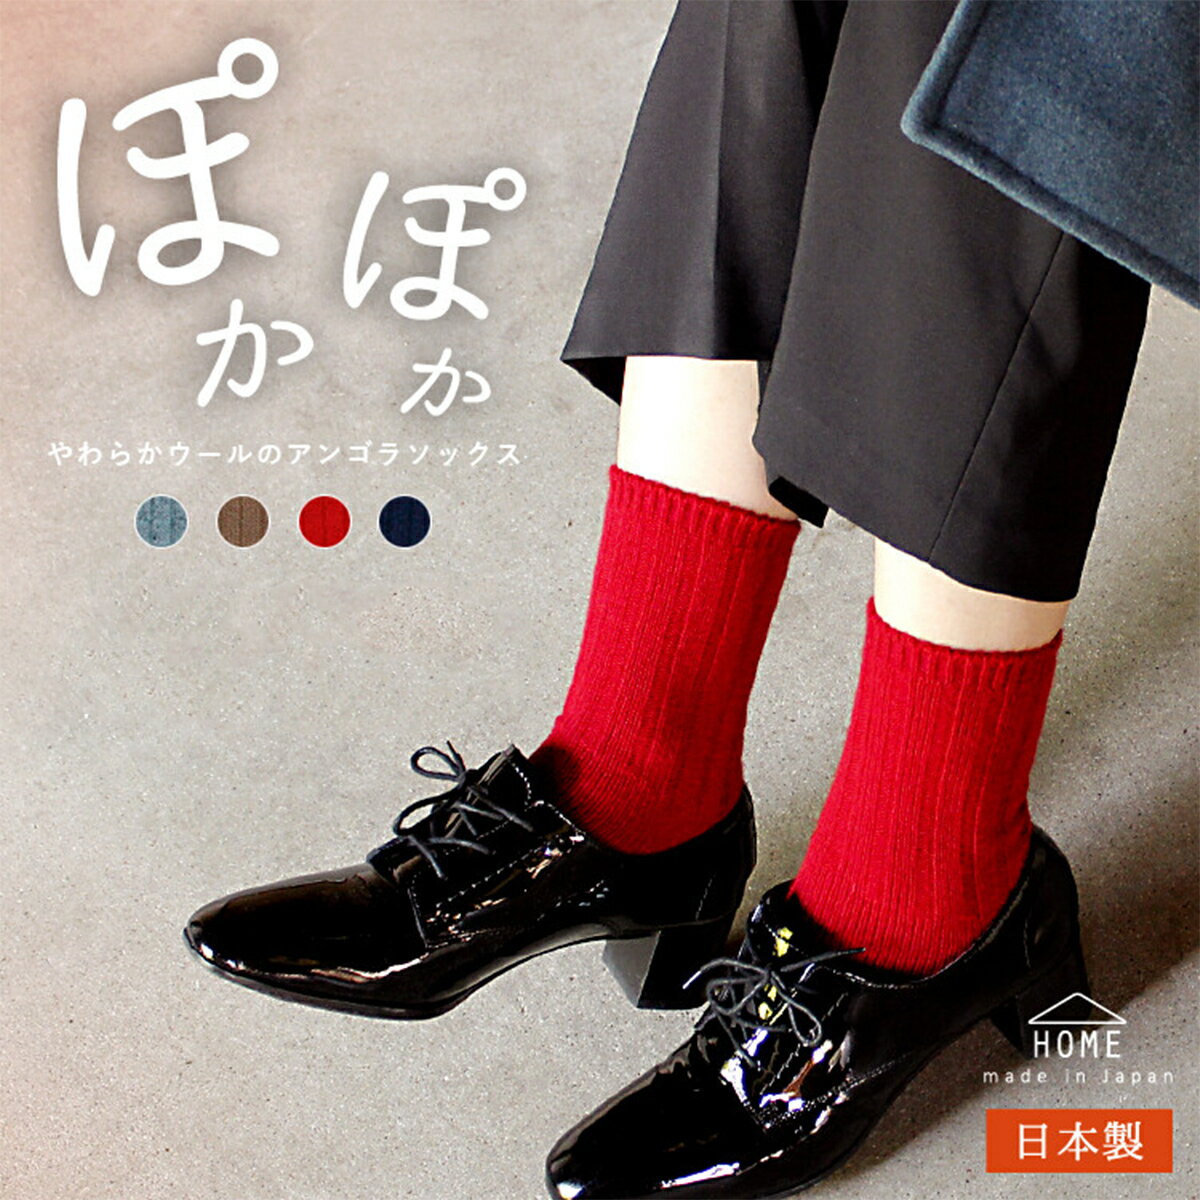 送料無料 やわらかウールのアンゴラソックス【HOME】日本製 レディース 靴下 ウール アンゴラ クルー丈 柔らかい